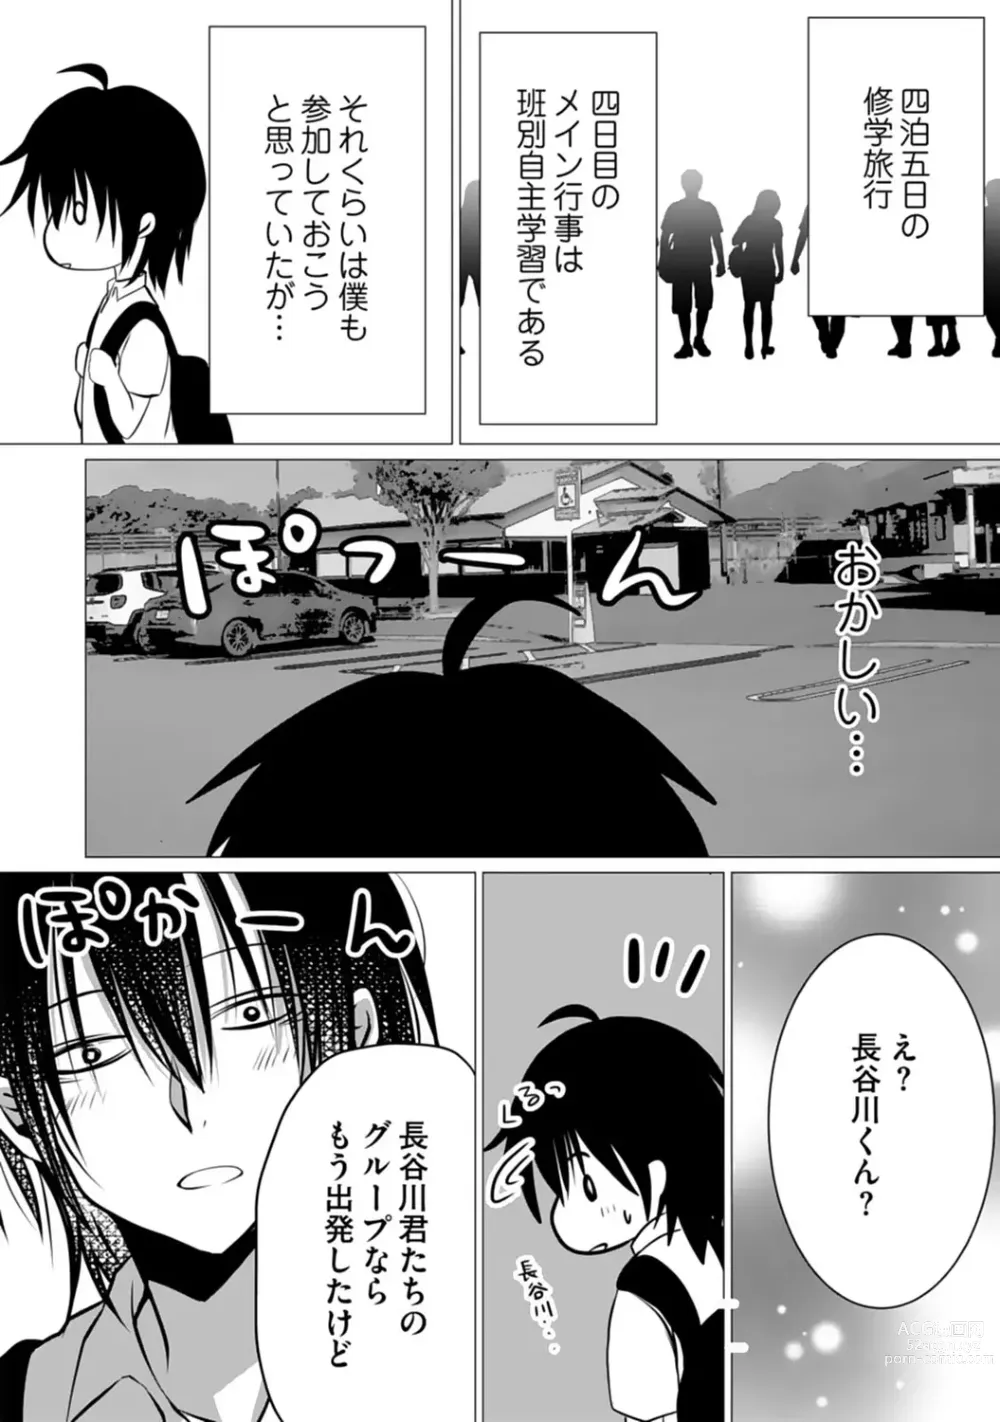 Page 108 of manga Bocchi no Boku demo, Kuzu no Yarichin ni Nareru tte Honto desu ka?